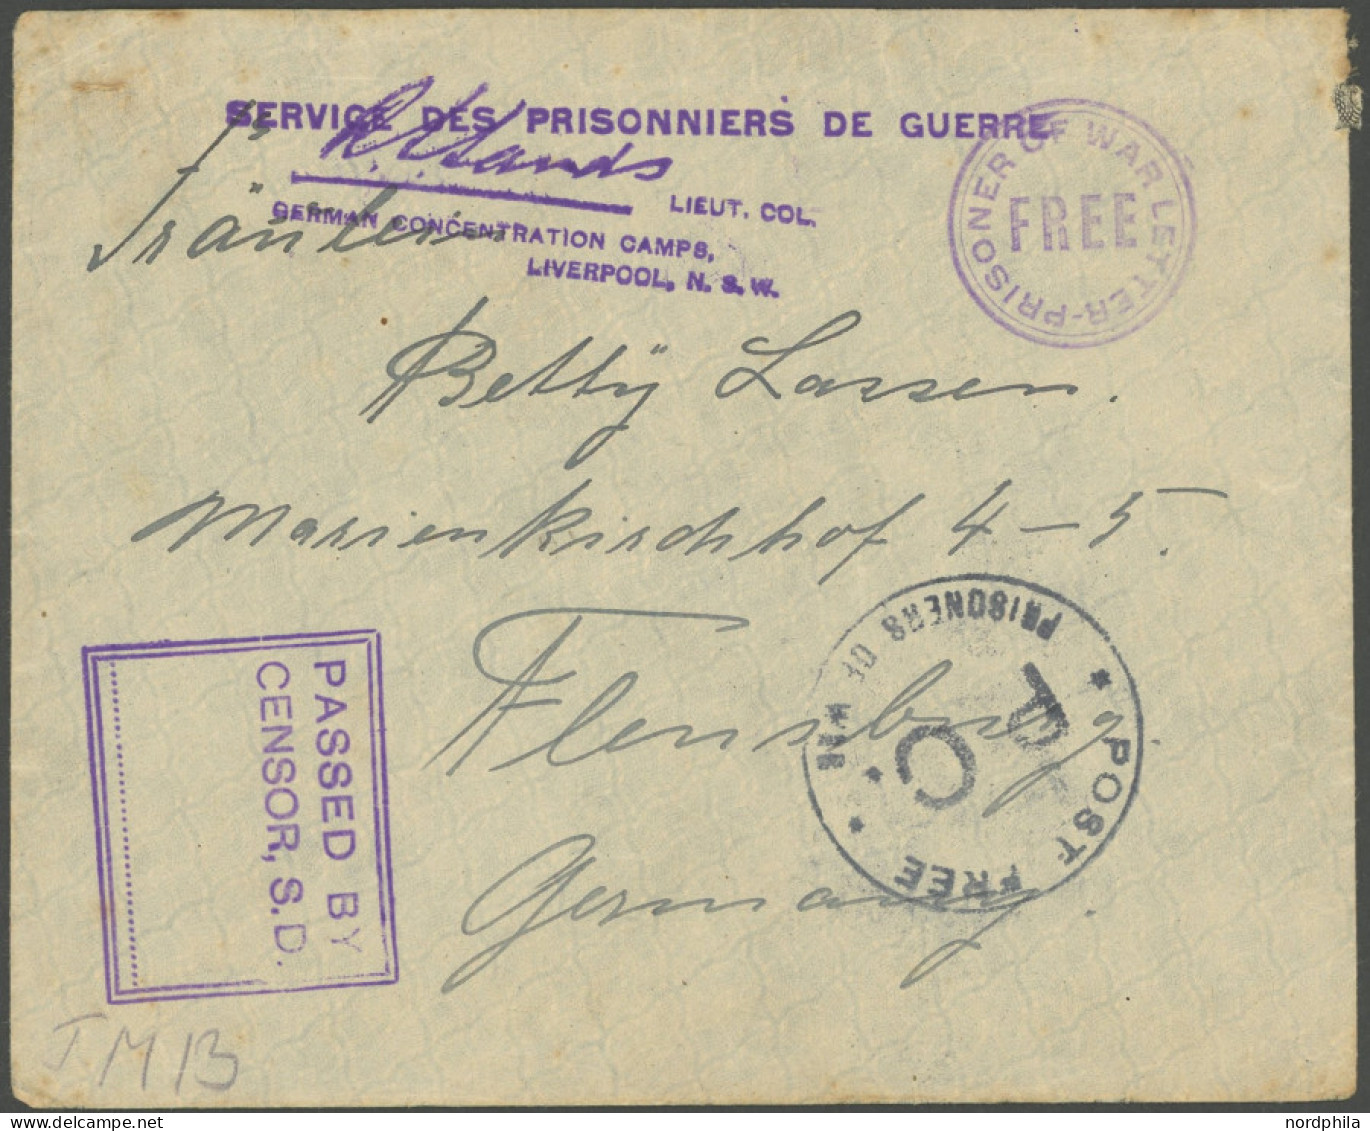 DEUTSCH-NEUGUINEA 1916, Brief Aus Dem Lager Trial Bay Mit Violettem Zensurstempel L4 LIEUT.COL. 1GERMAN CONCENTRATION CA - Deutsch-Neuguinea